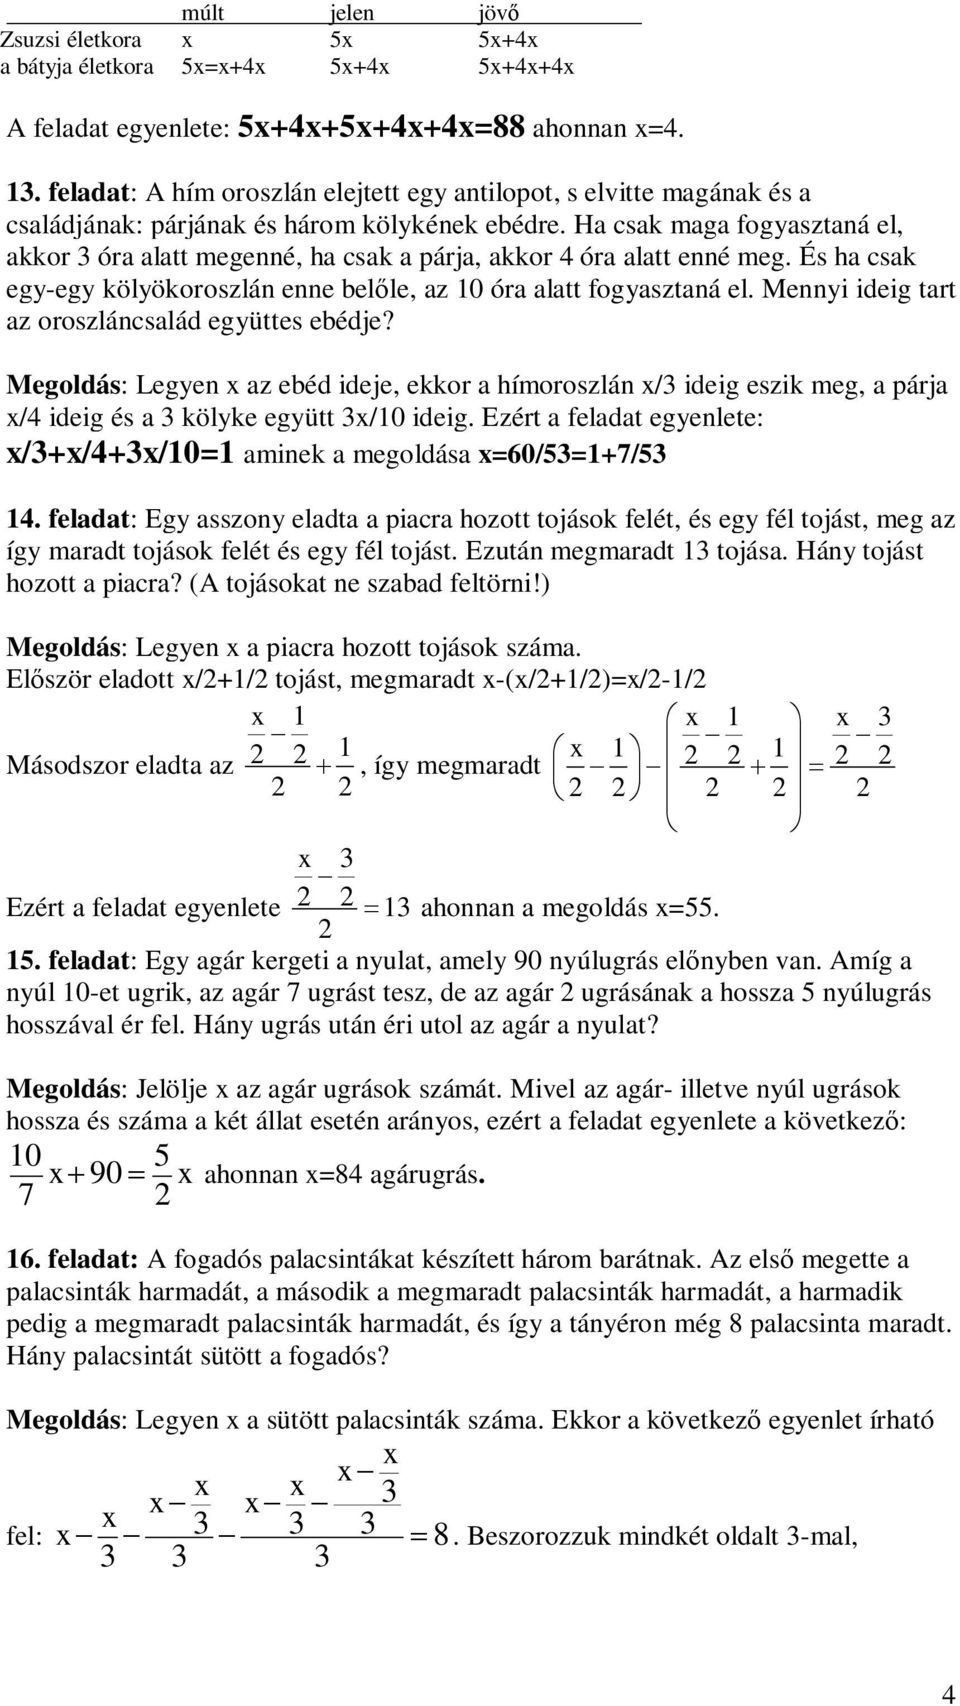 Egyenletekkel megoldható szöveges feladatok - PDF Ingyenes letöltés